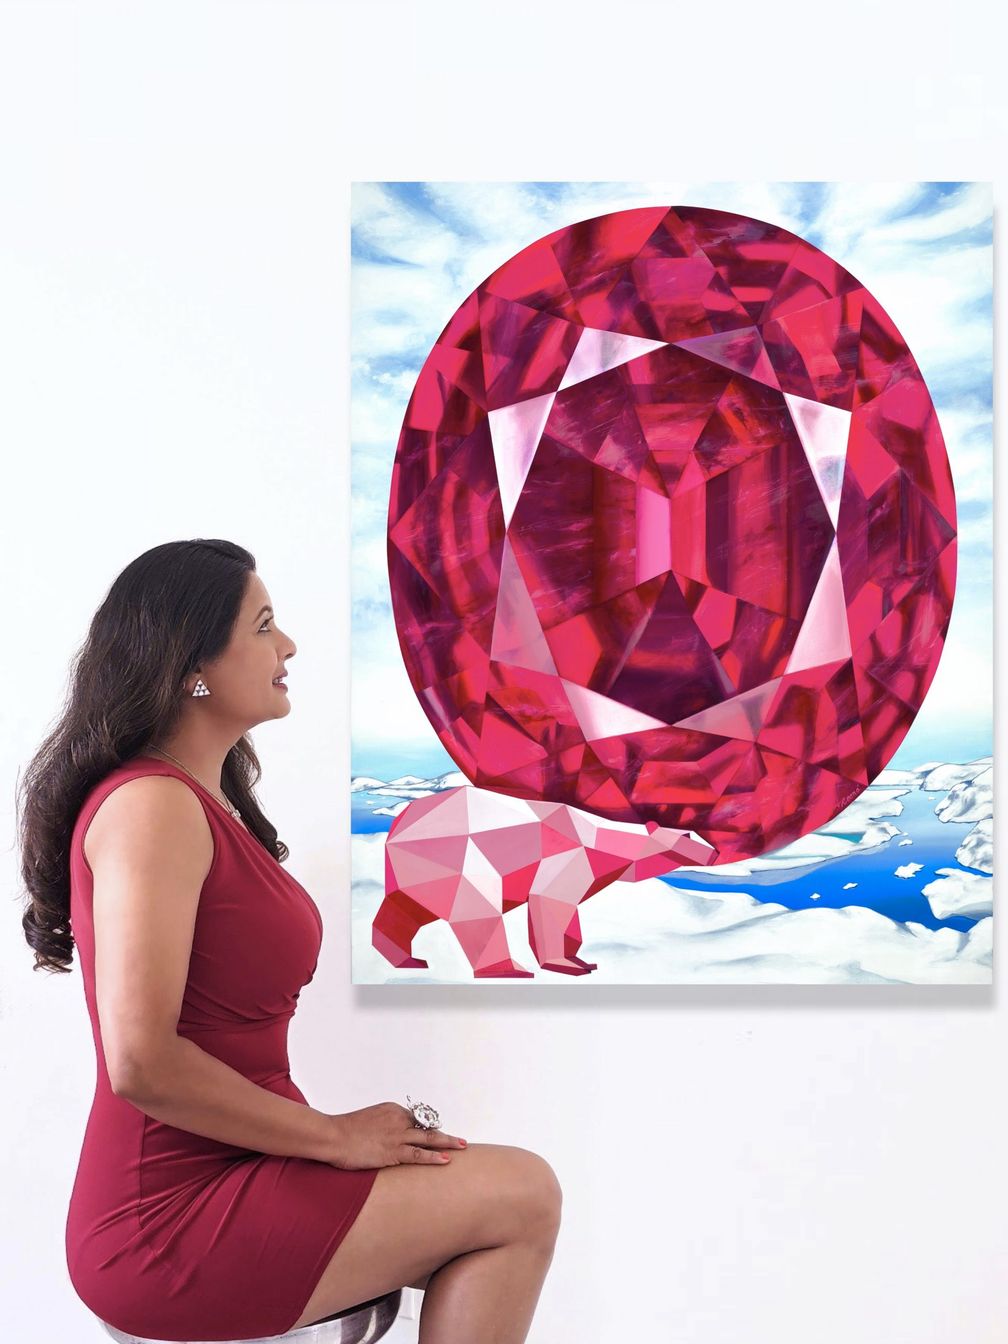 Рина Ахлувалия со своей картиной «Огонь подо льдом»